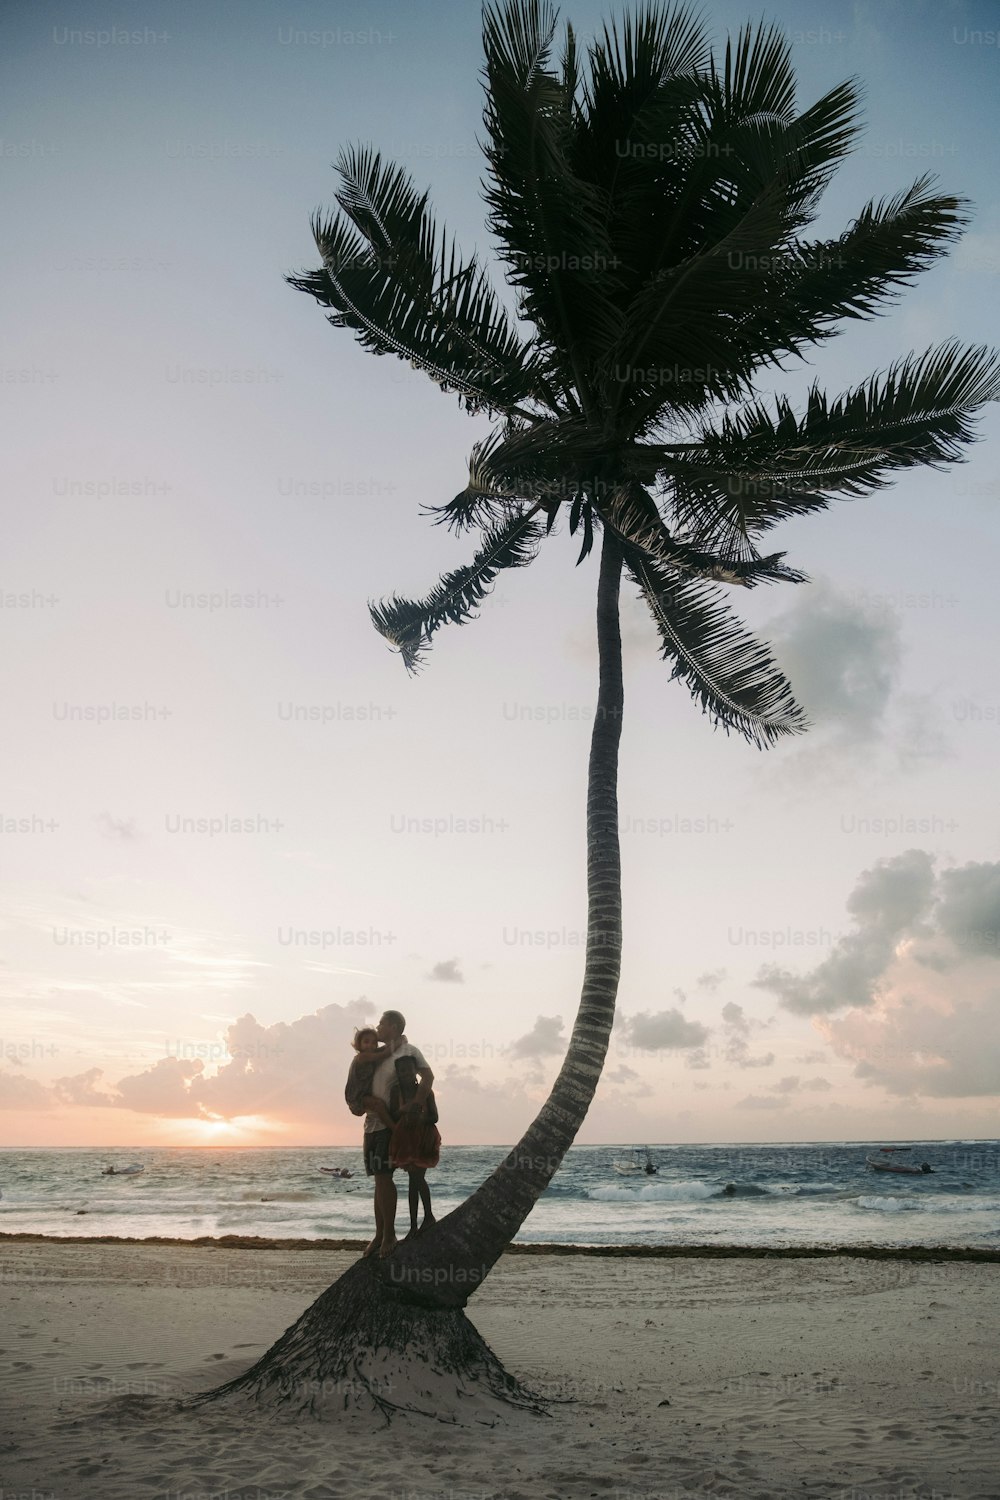 Un homme debout au sommet d’un palmier au bord de l’océan